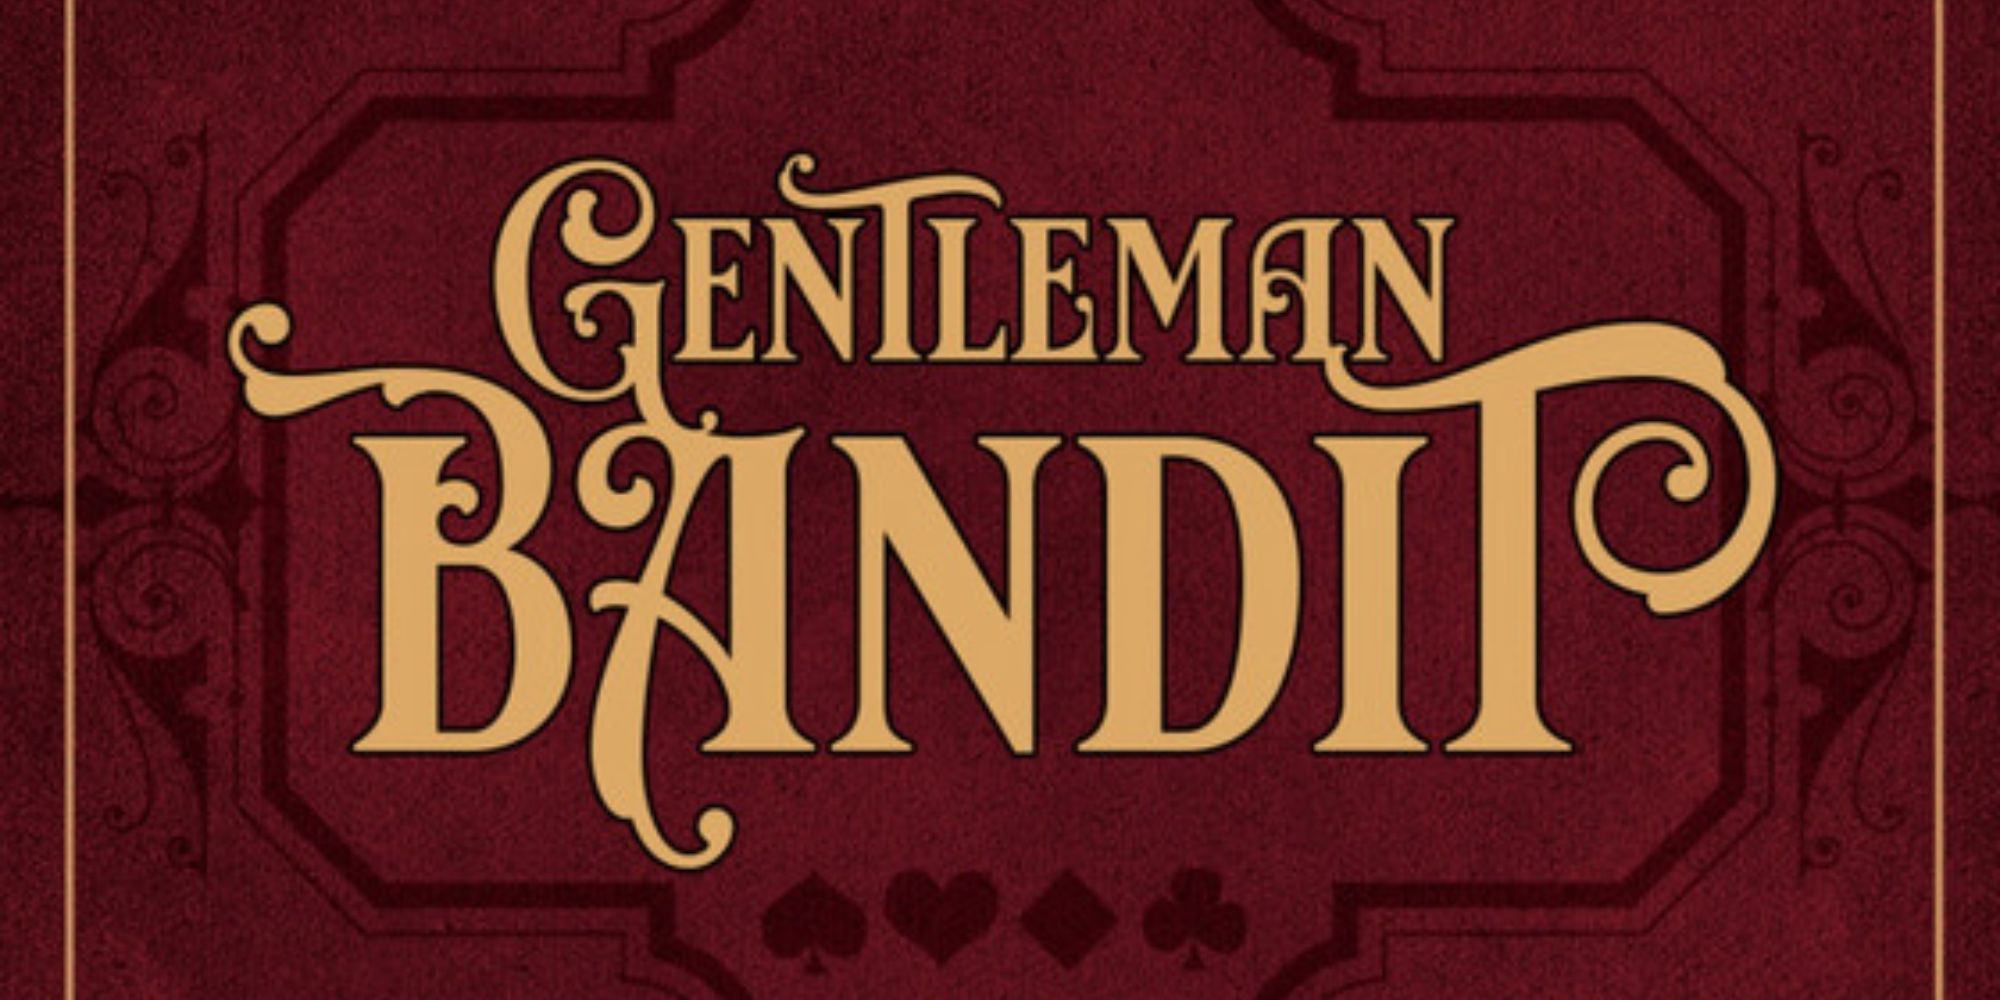 Gentleman Bandit Cover Art